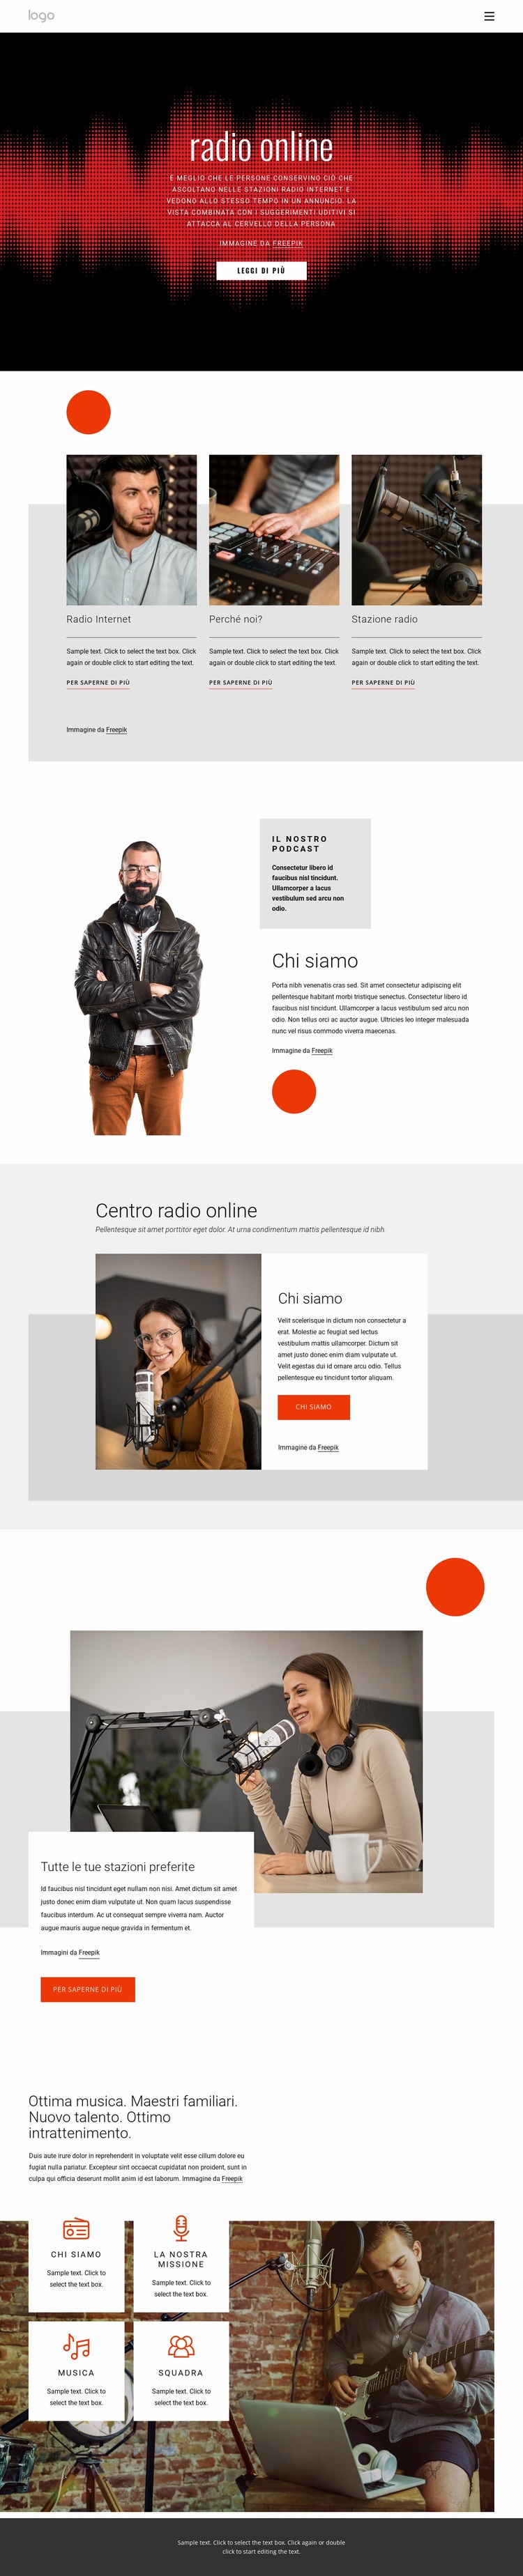 Programmi radiofonici in linea Un modello di pagina